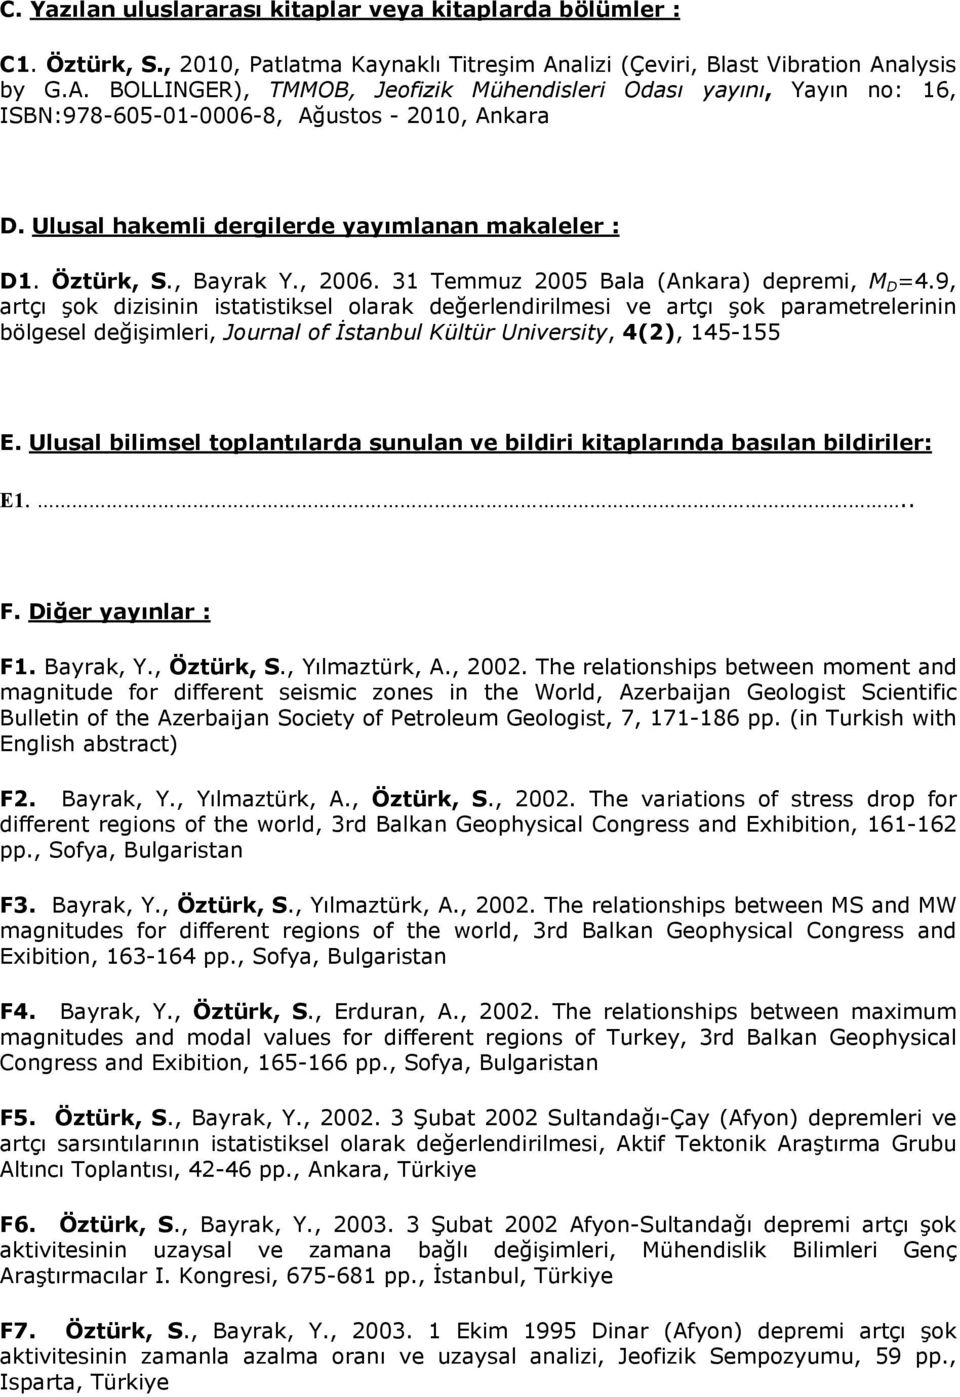 Ulusal hakemli dergilerde yayımlanan makaleler : D1. Öztürk, S., Bayrak Y., 2006. 31 Temmuz 2005 Bala (Ankara) depremi, M D =4.